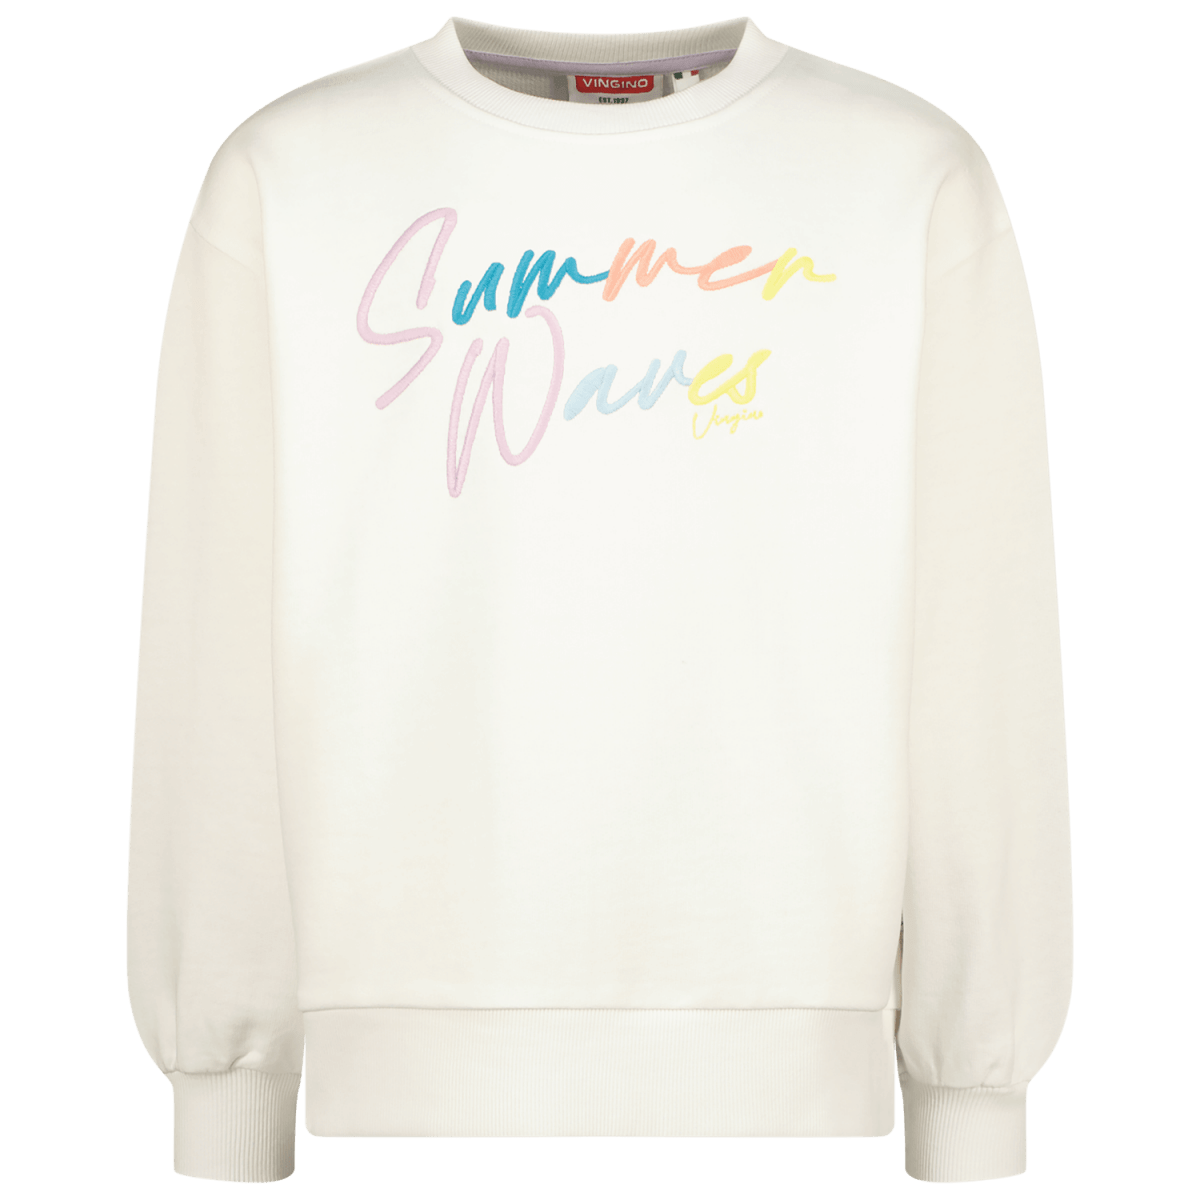 Mädchen Sweater Nina Real White